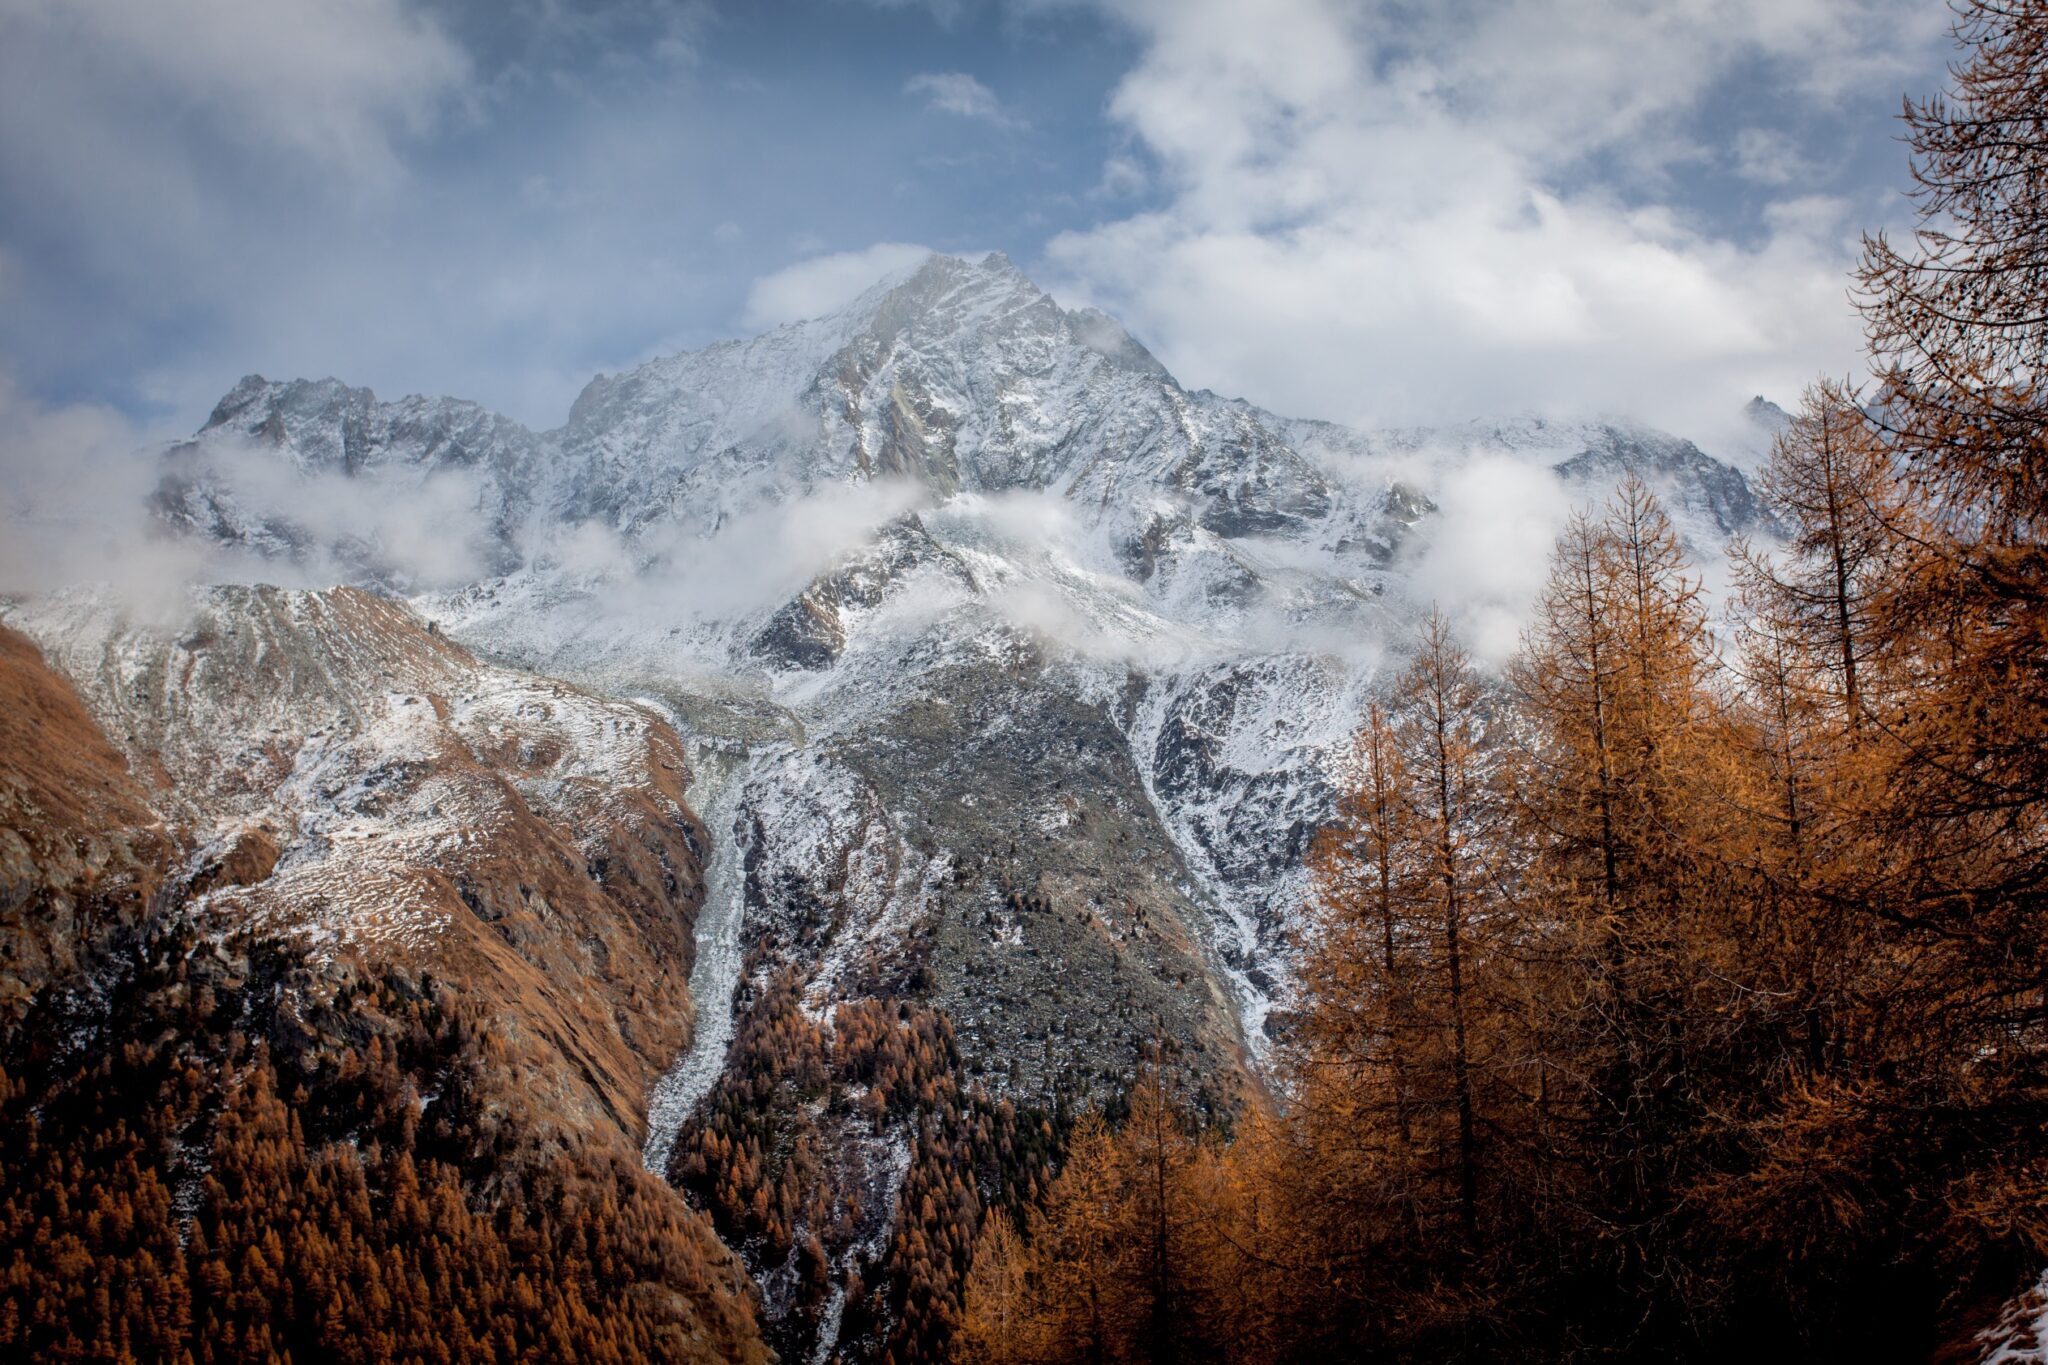 Suisse – autumn & winter